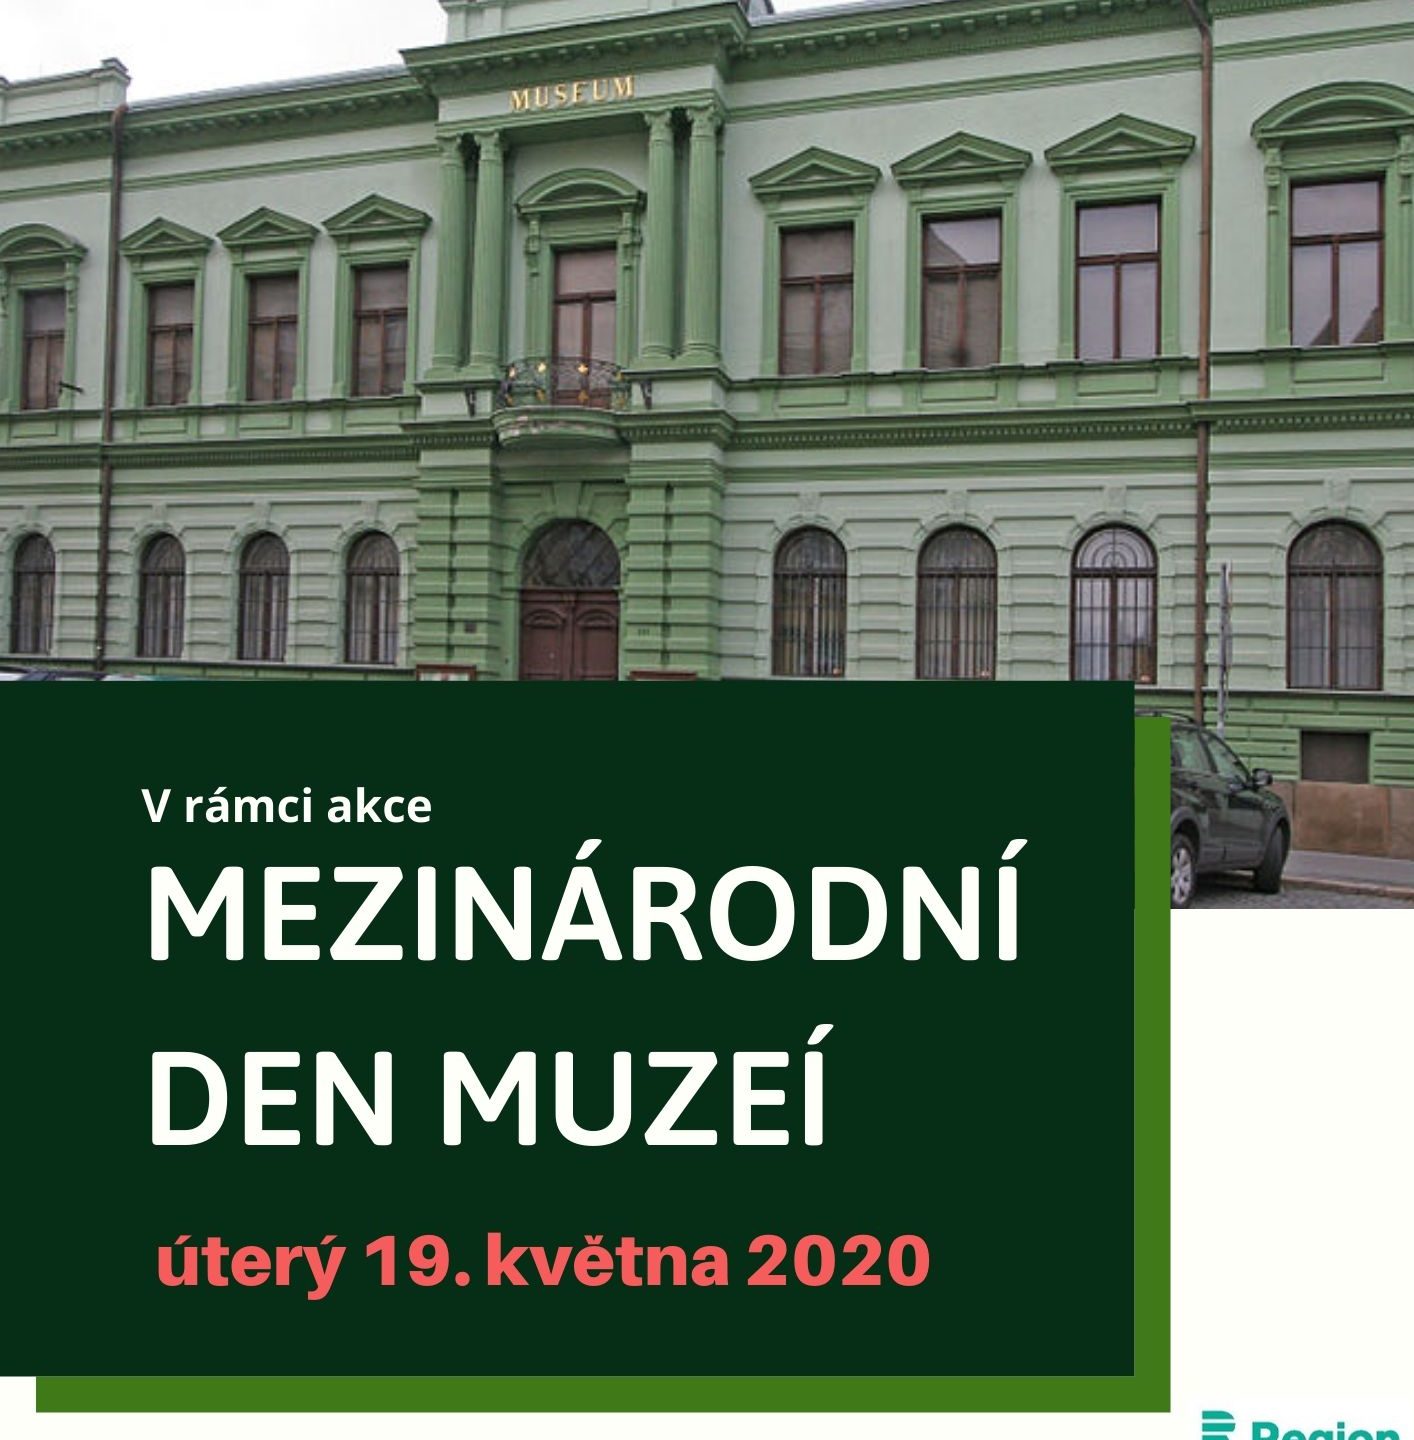 Mezinárodní den muzeí 2020